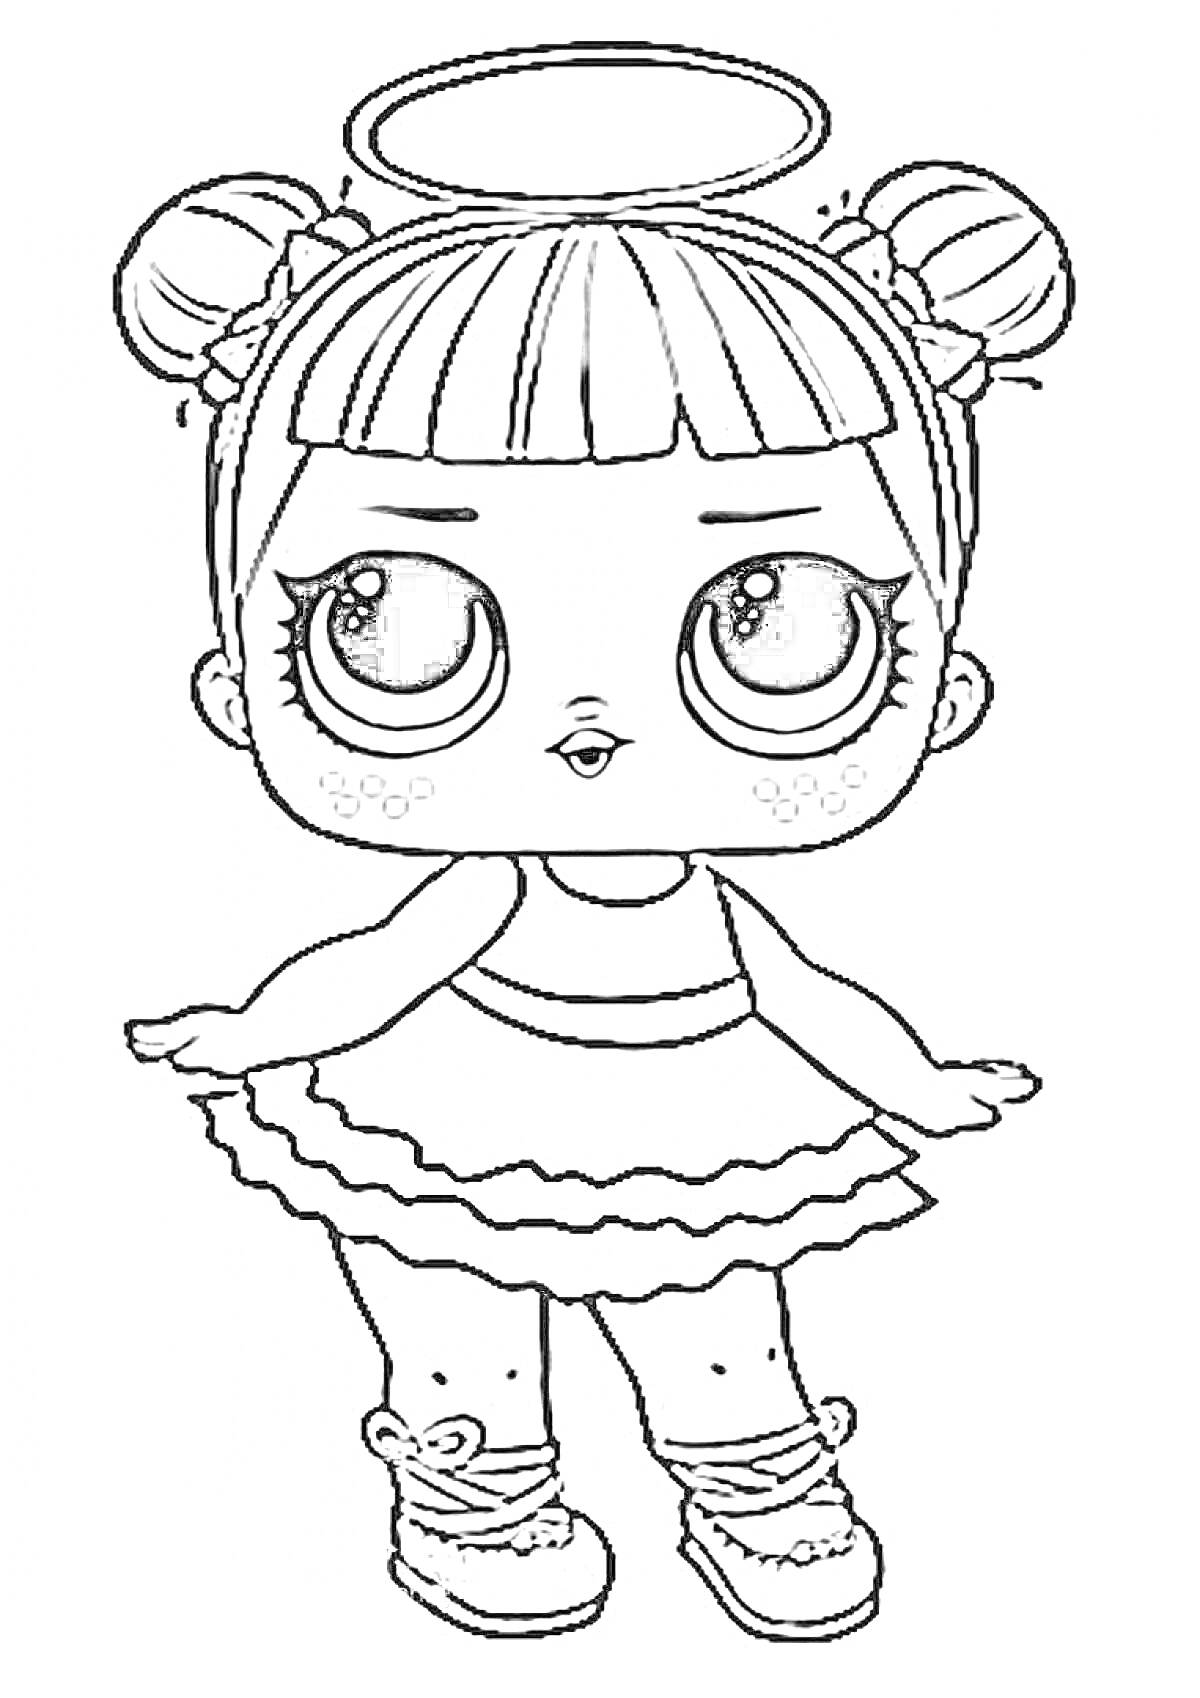  Кукла Лол с нимбом, двумя хвостиками, большими глазами, в платье с оборками и бантиками на туфельках